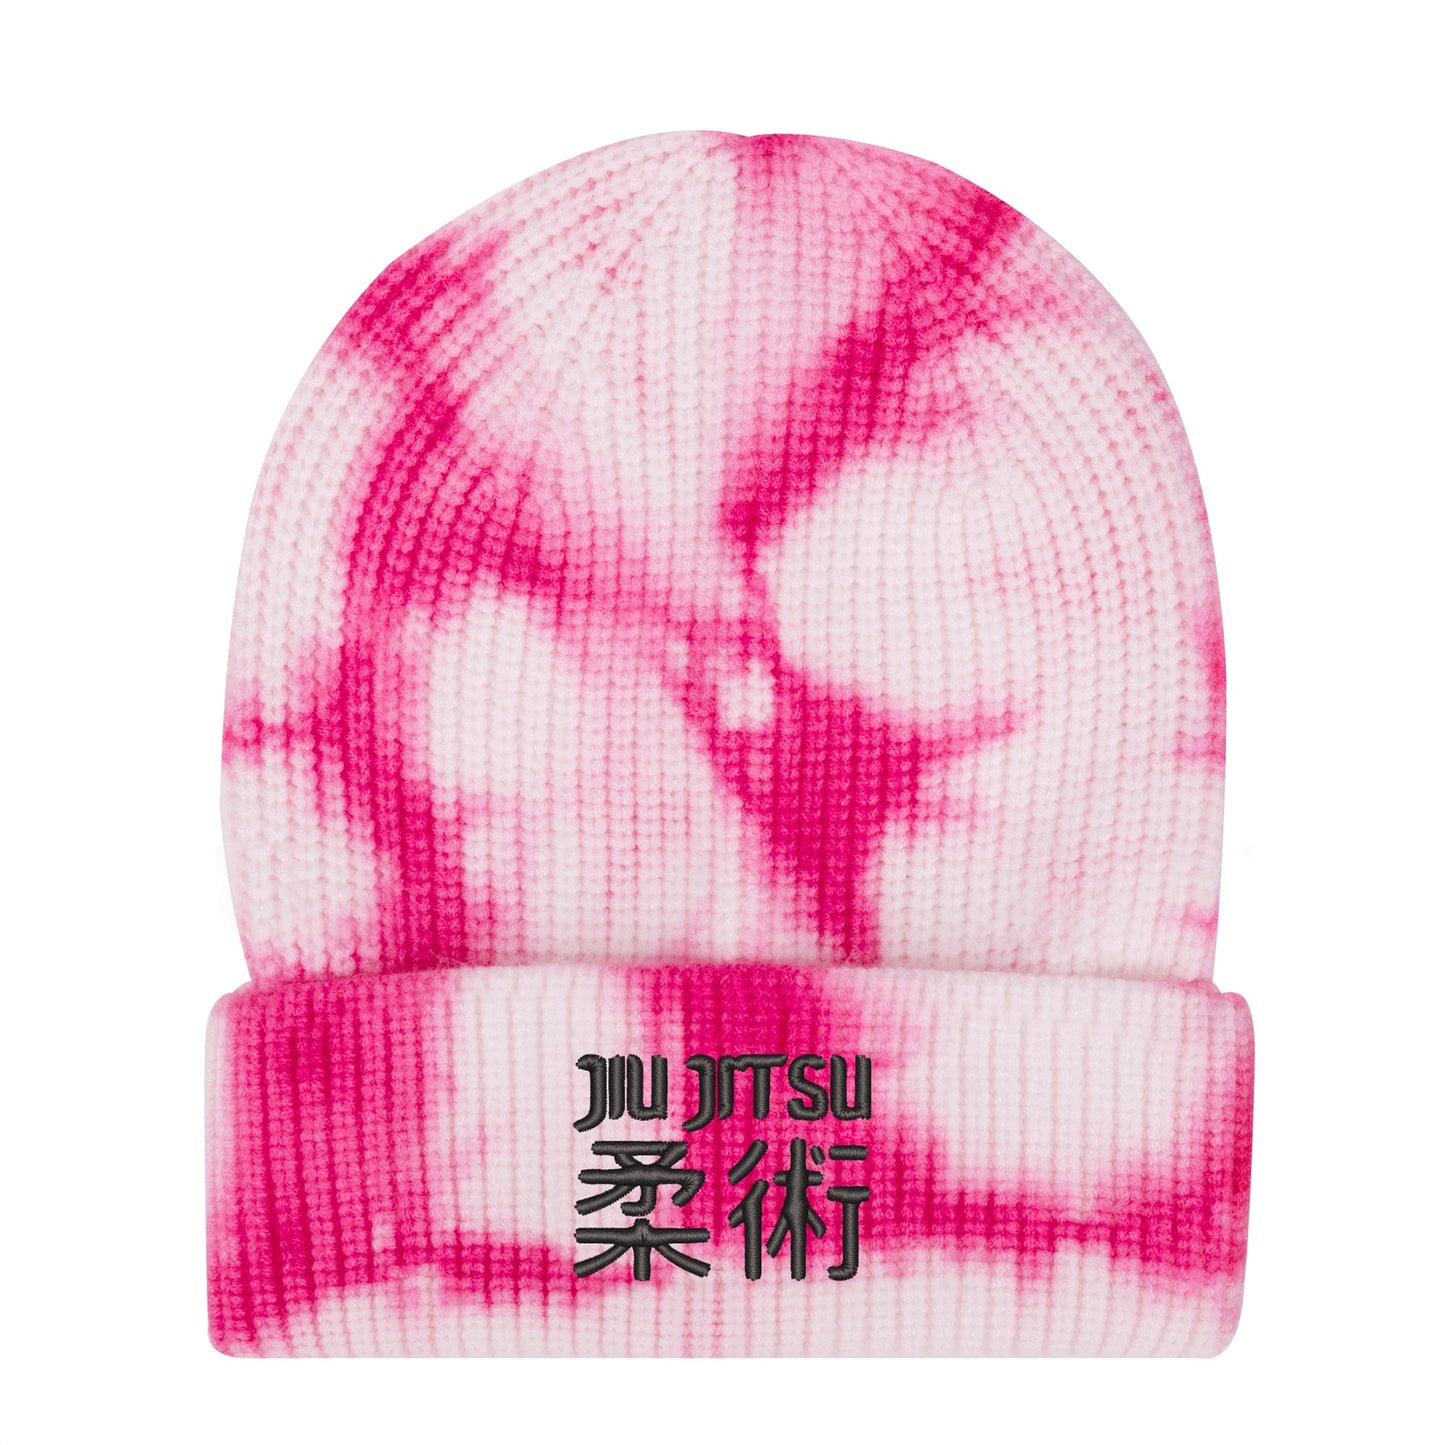 Jitsu Star Camo Knitted Hats